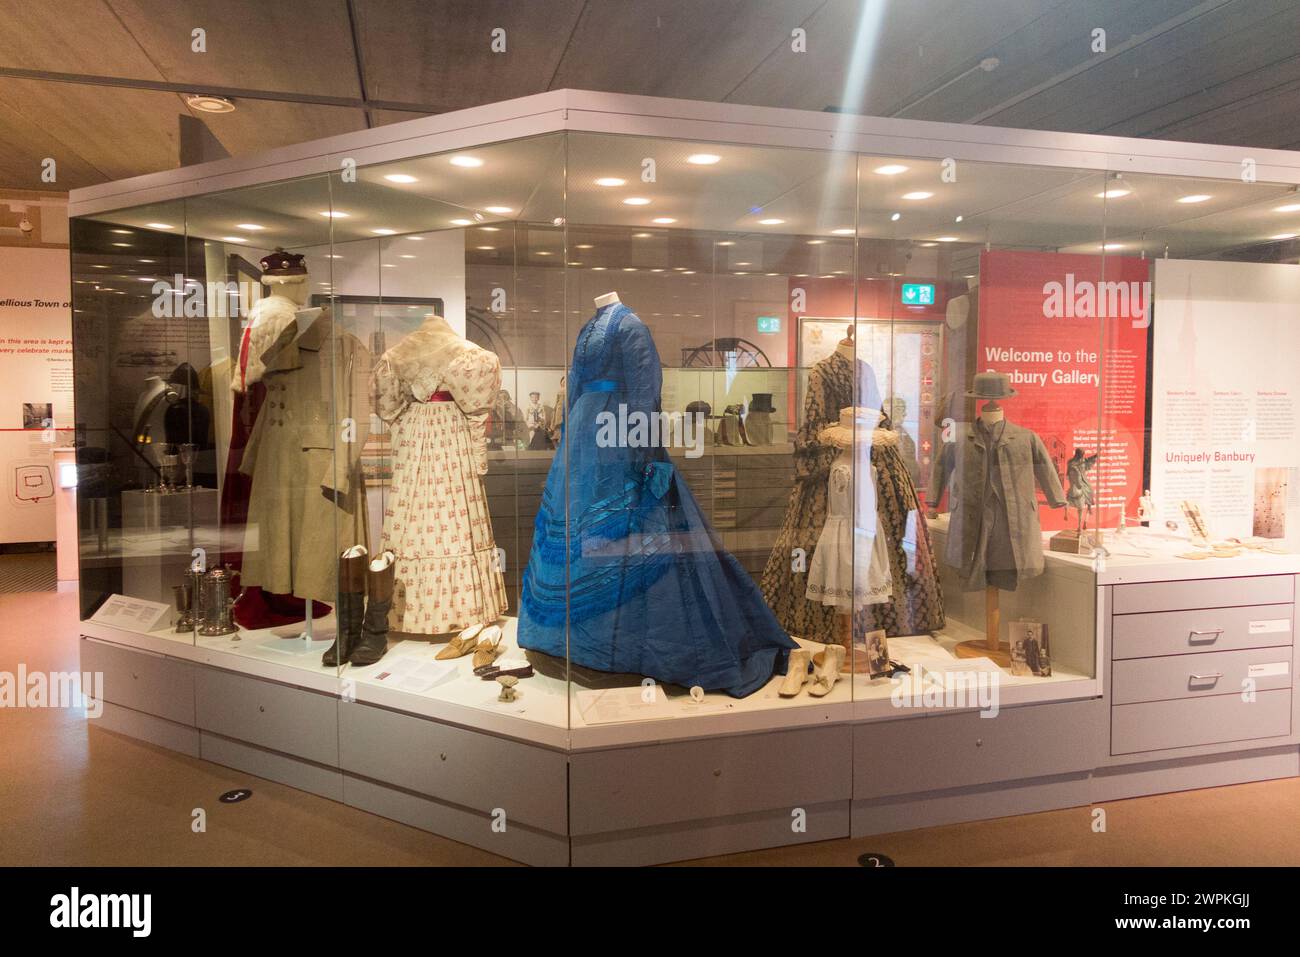 Expositions comprenant des robes et vêtements vintage locaux / fabriqués localement en exposition au Musée de Banbury, dans le nord de l'Oxfordshire, Angleterre. ROYAUME-UNI (134) Banque D'Images